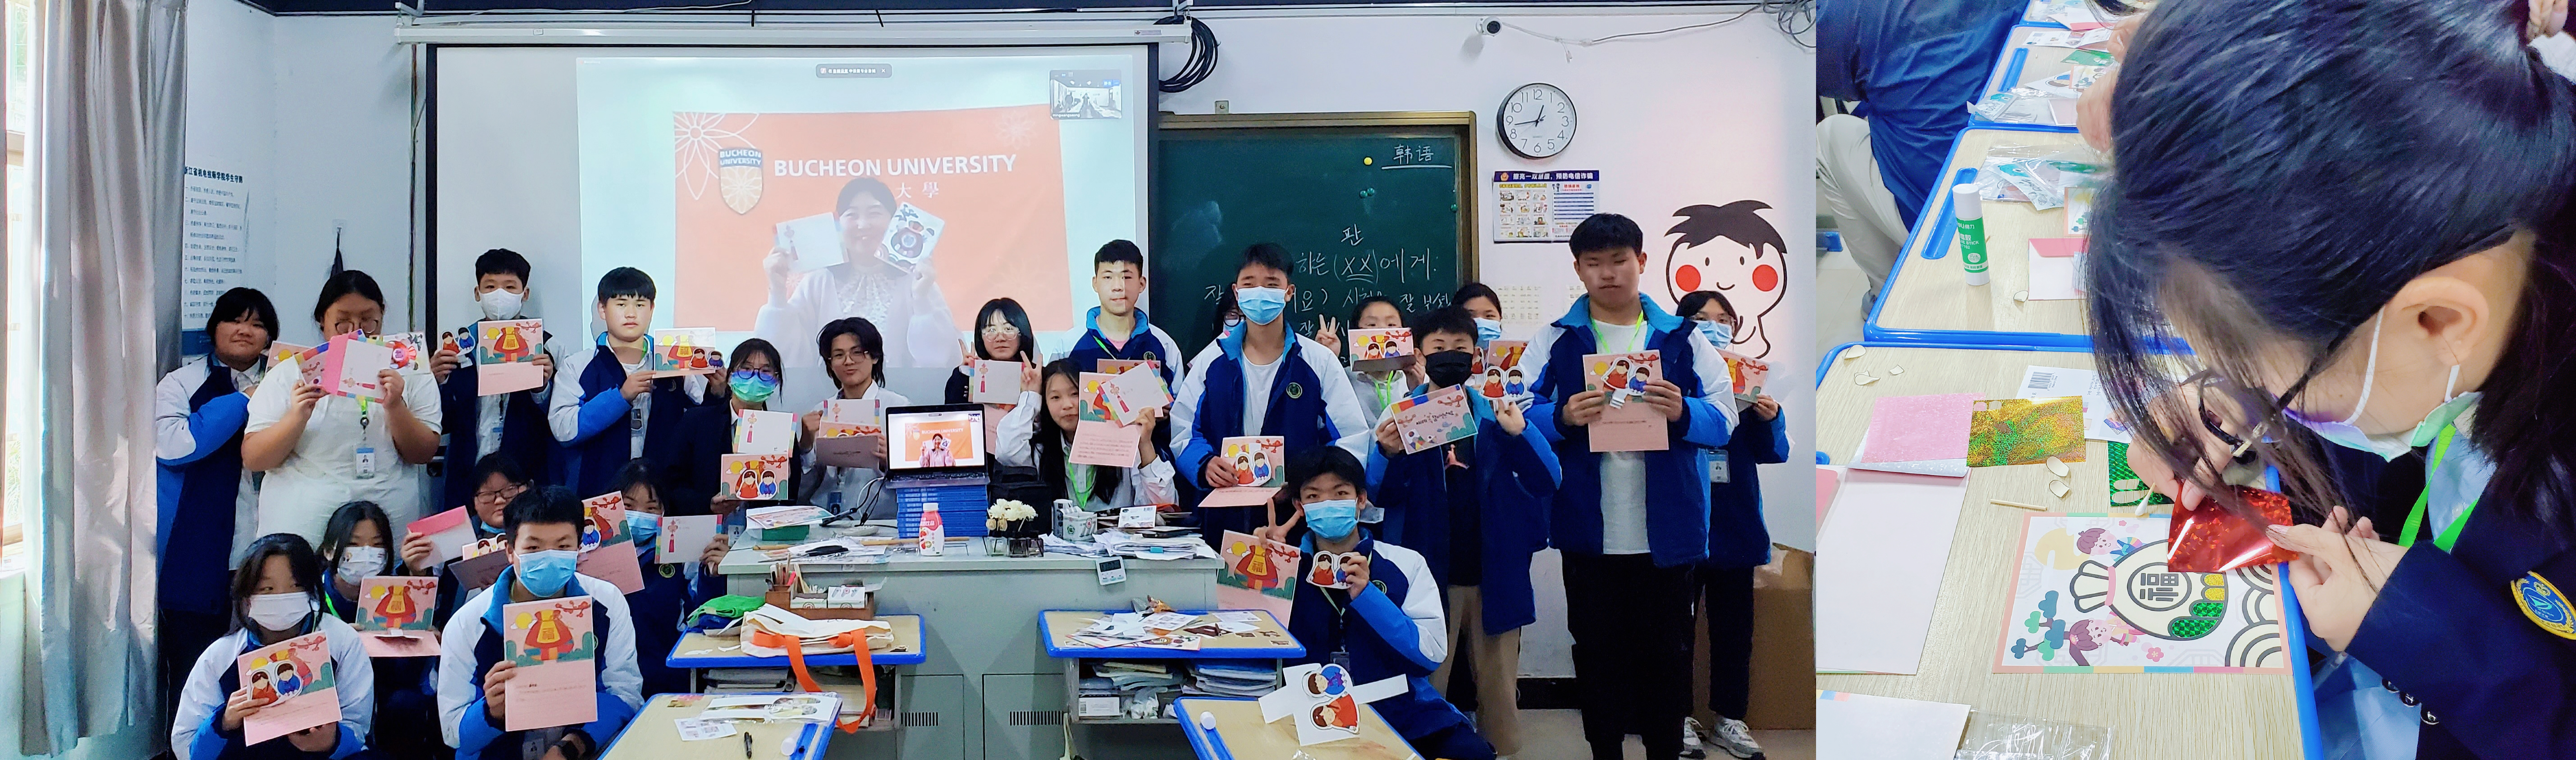 부천대학교, China·Online Culture Class ‘방문-VISIT’ 프로그램 실시